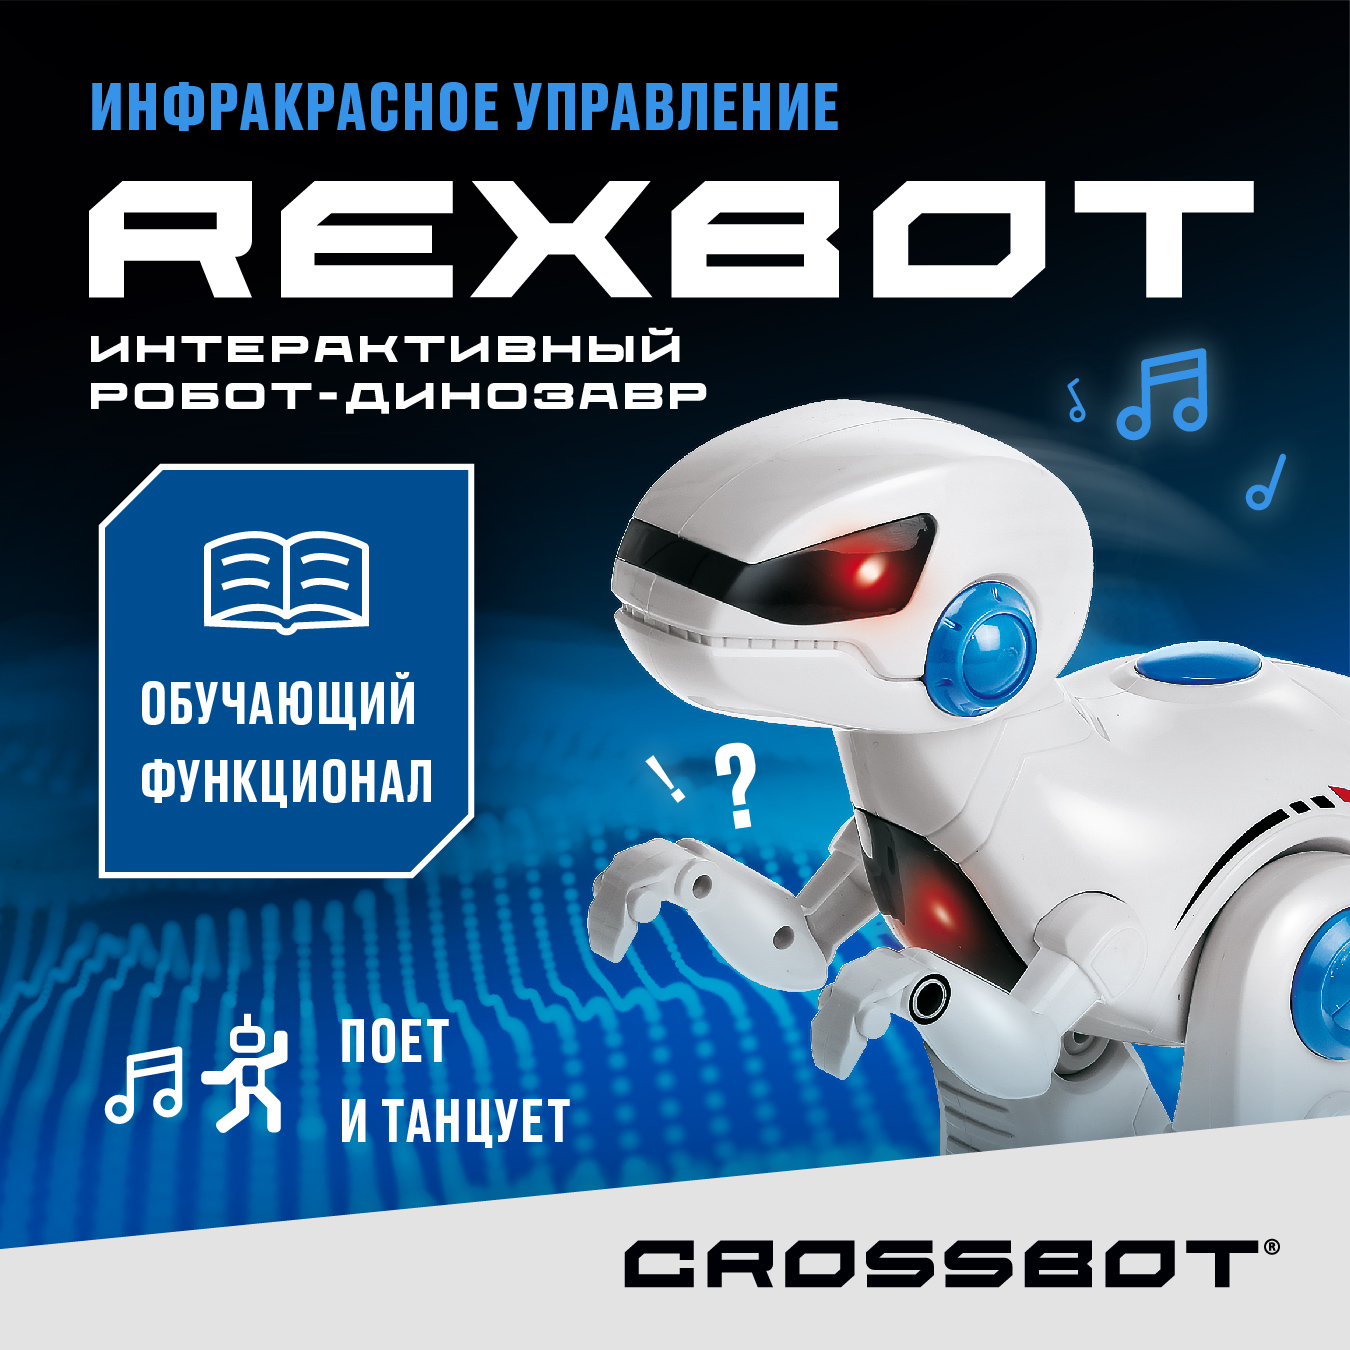 Радиоуправляемая игрушка Робот Динозавр Рекс на пульте Crossbot интерактивная радиоуправляемая воздушная собачка робот zhorya сенсор выполняет команды